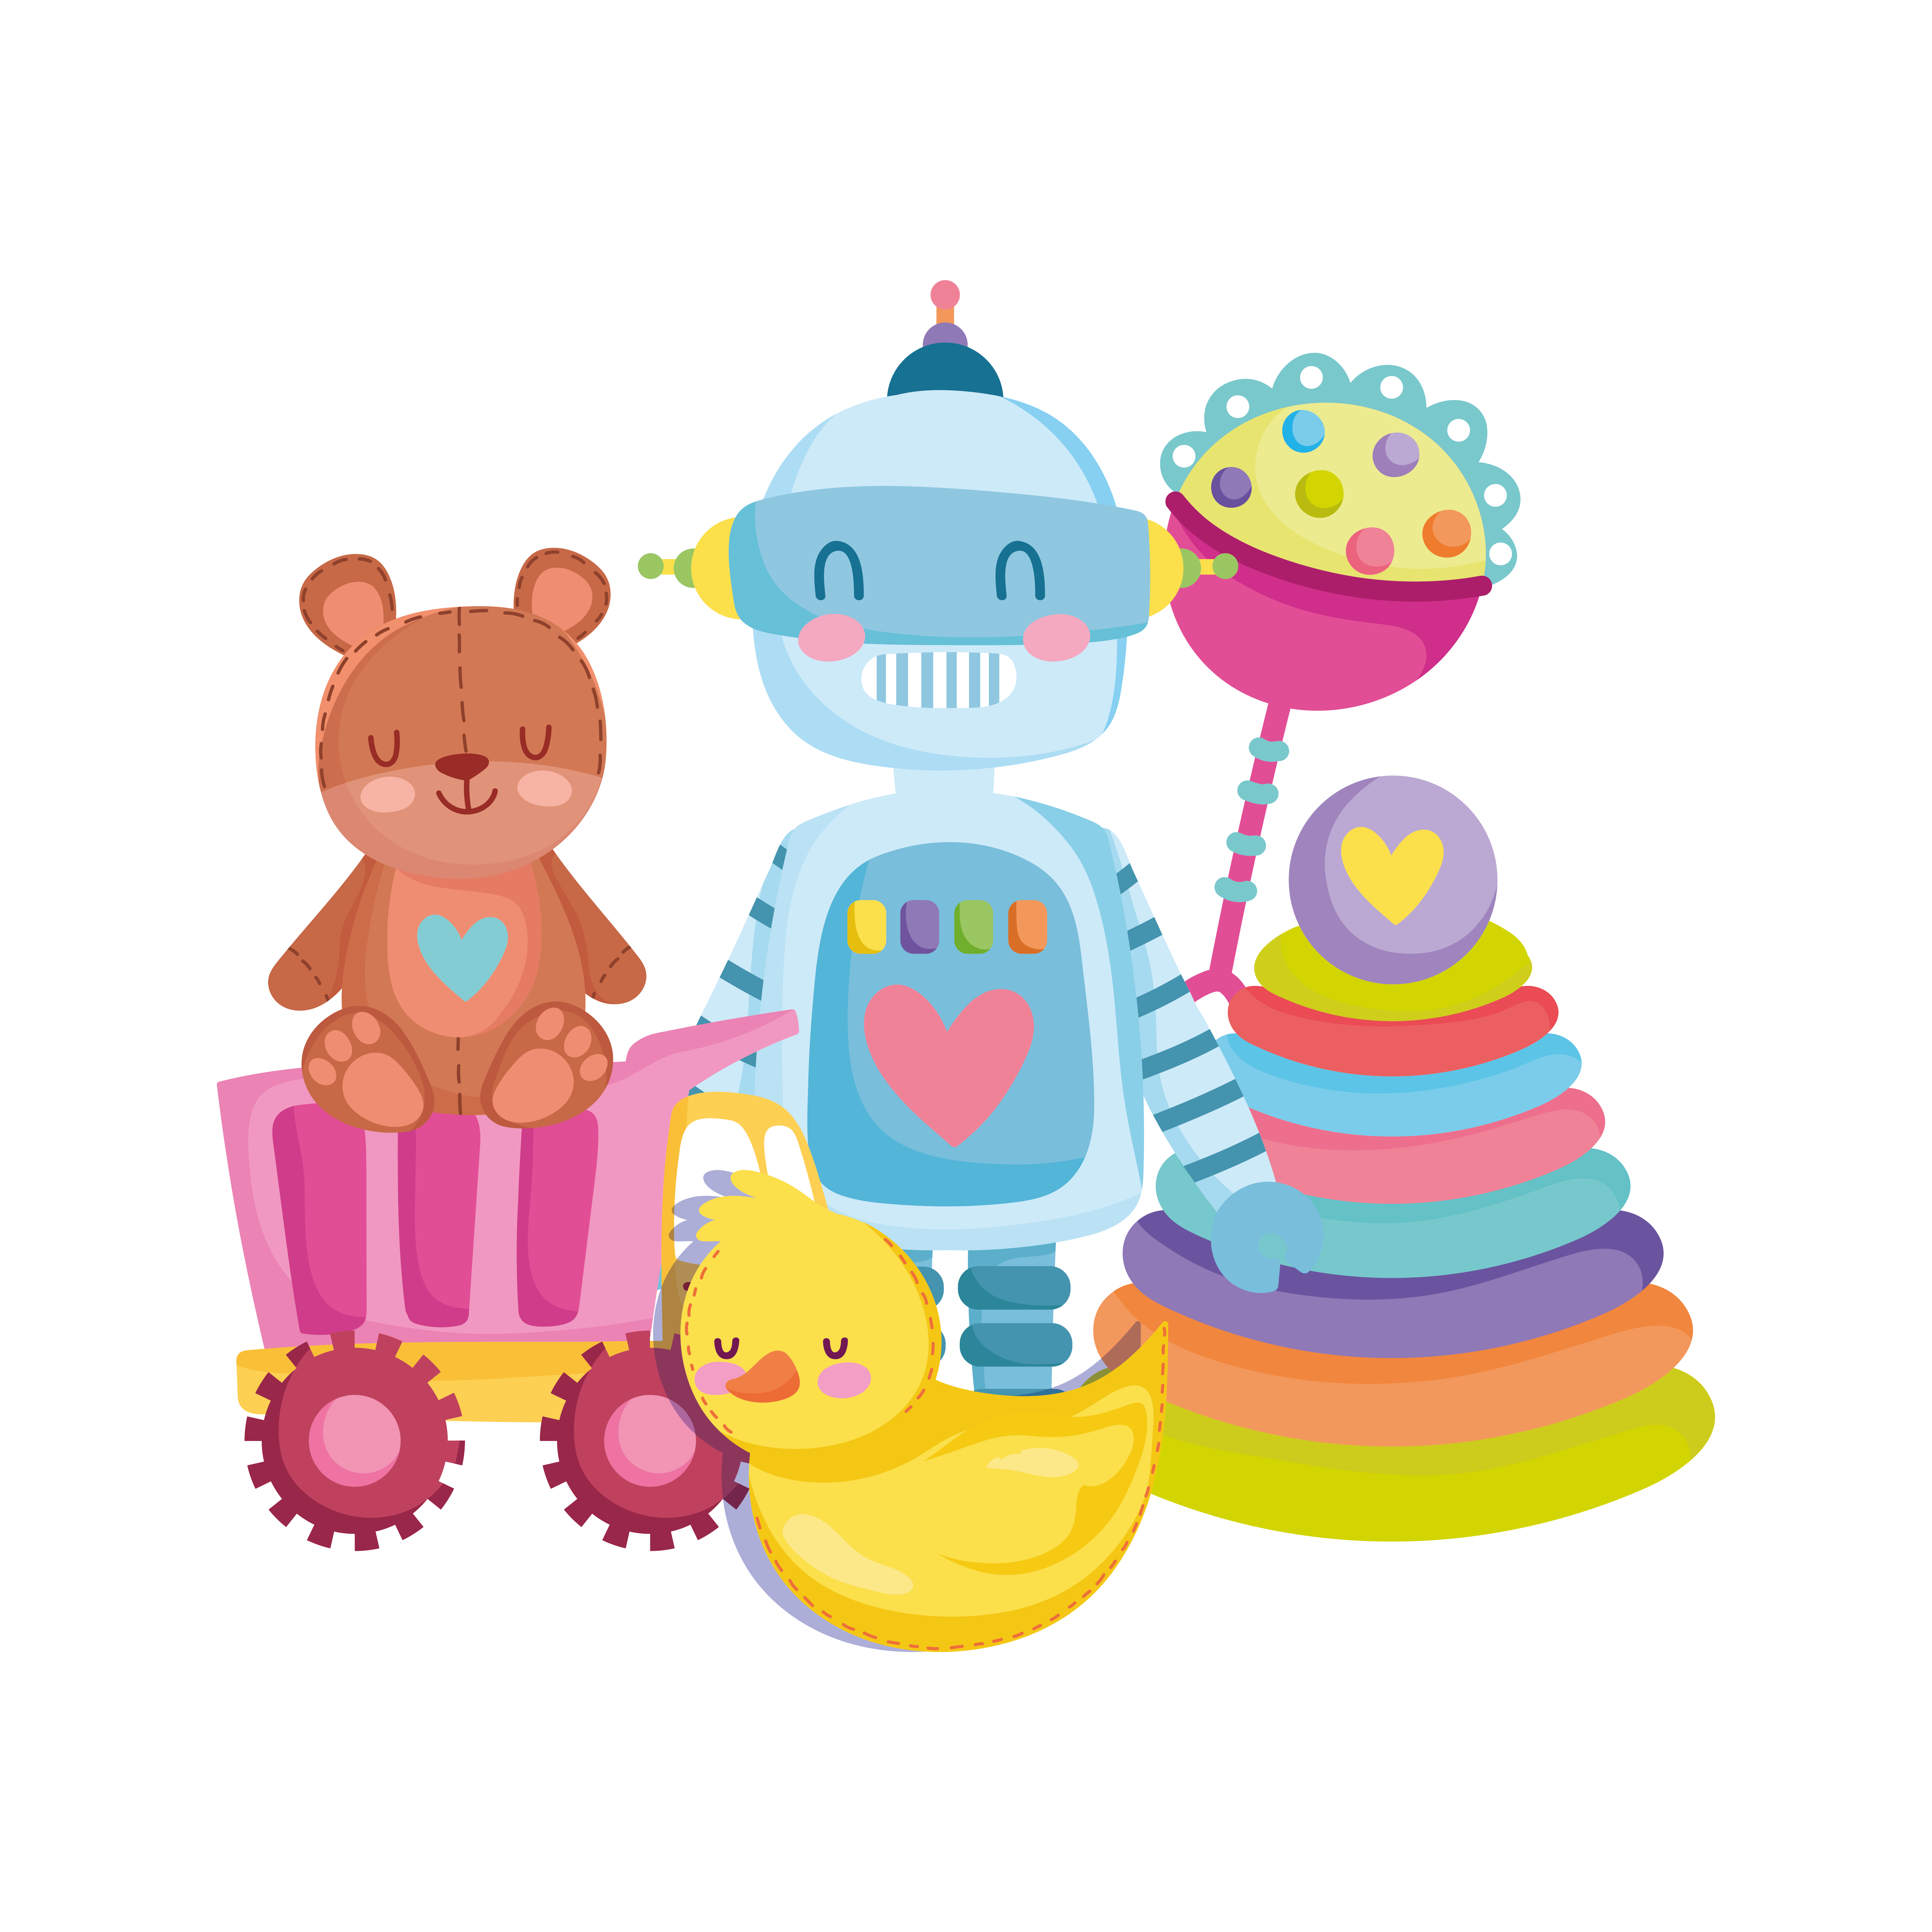 Spielzeug Objekt für kleine Kinder zu spielen Cartoon Teddybär Roboter Ente  Rassel LKW und Pyramide 1847355 Vektor Kunst bei Vecteezy